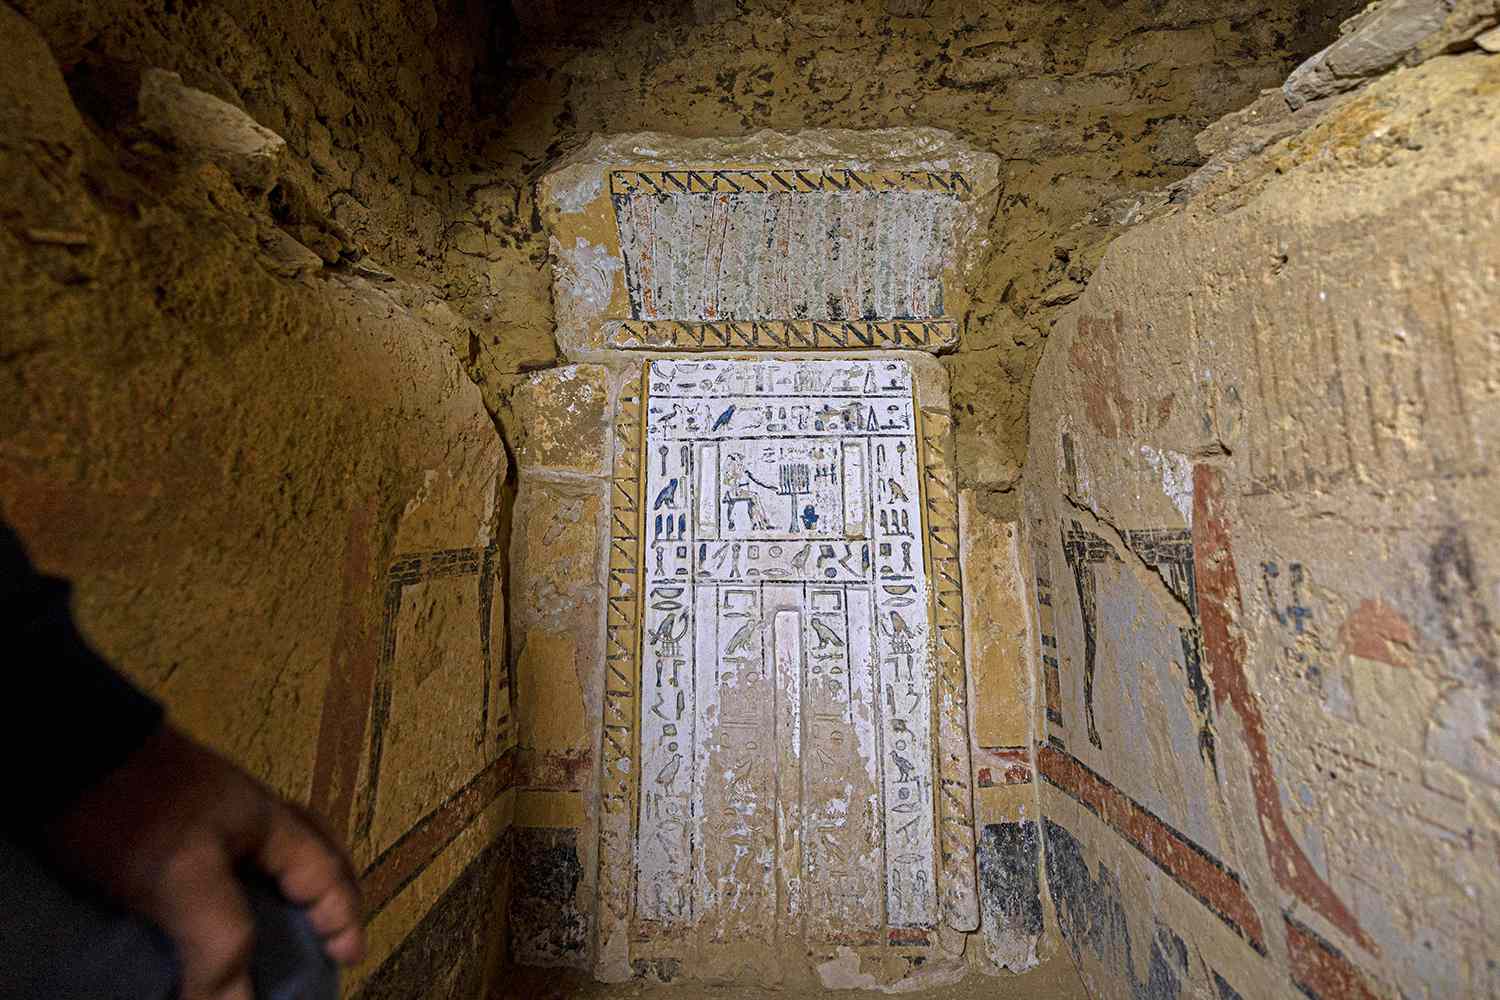 มัมมี่อายุ 4,300 ปีที่หุ้มด้วยทองคำเป็นหนึ่งในการค้นพบอันน่าทึ่งที่ไซต์อียิปต์